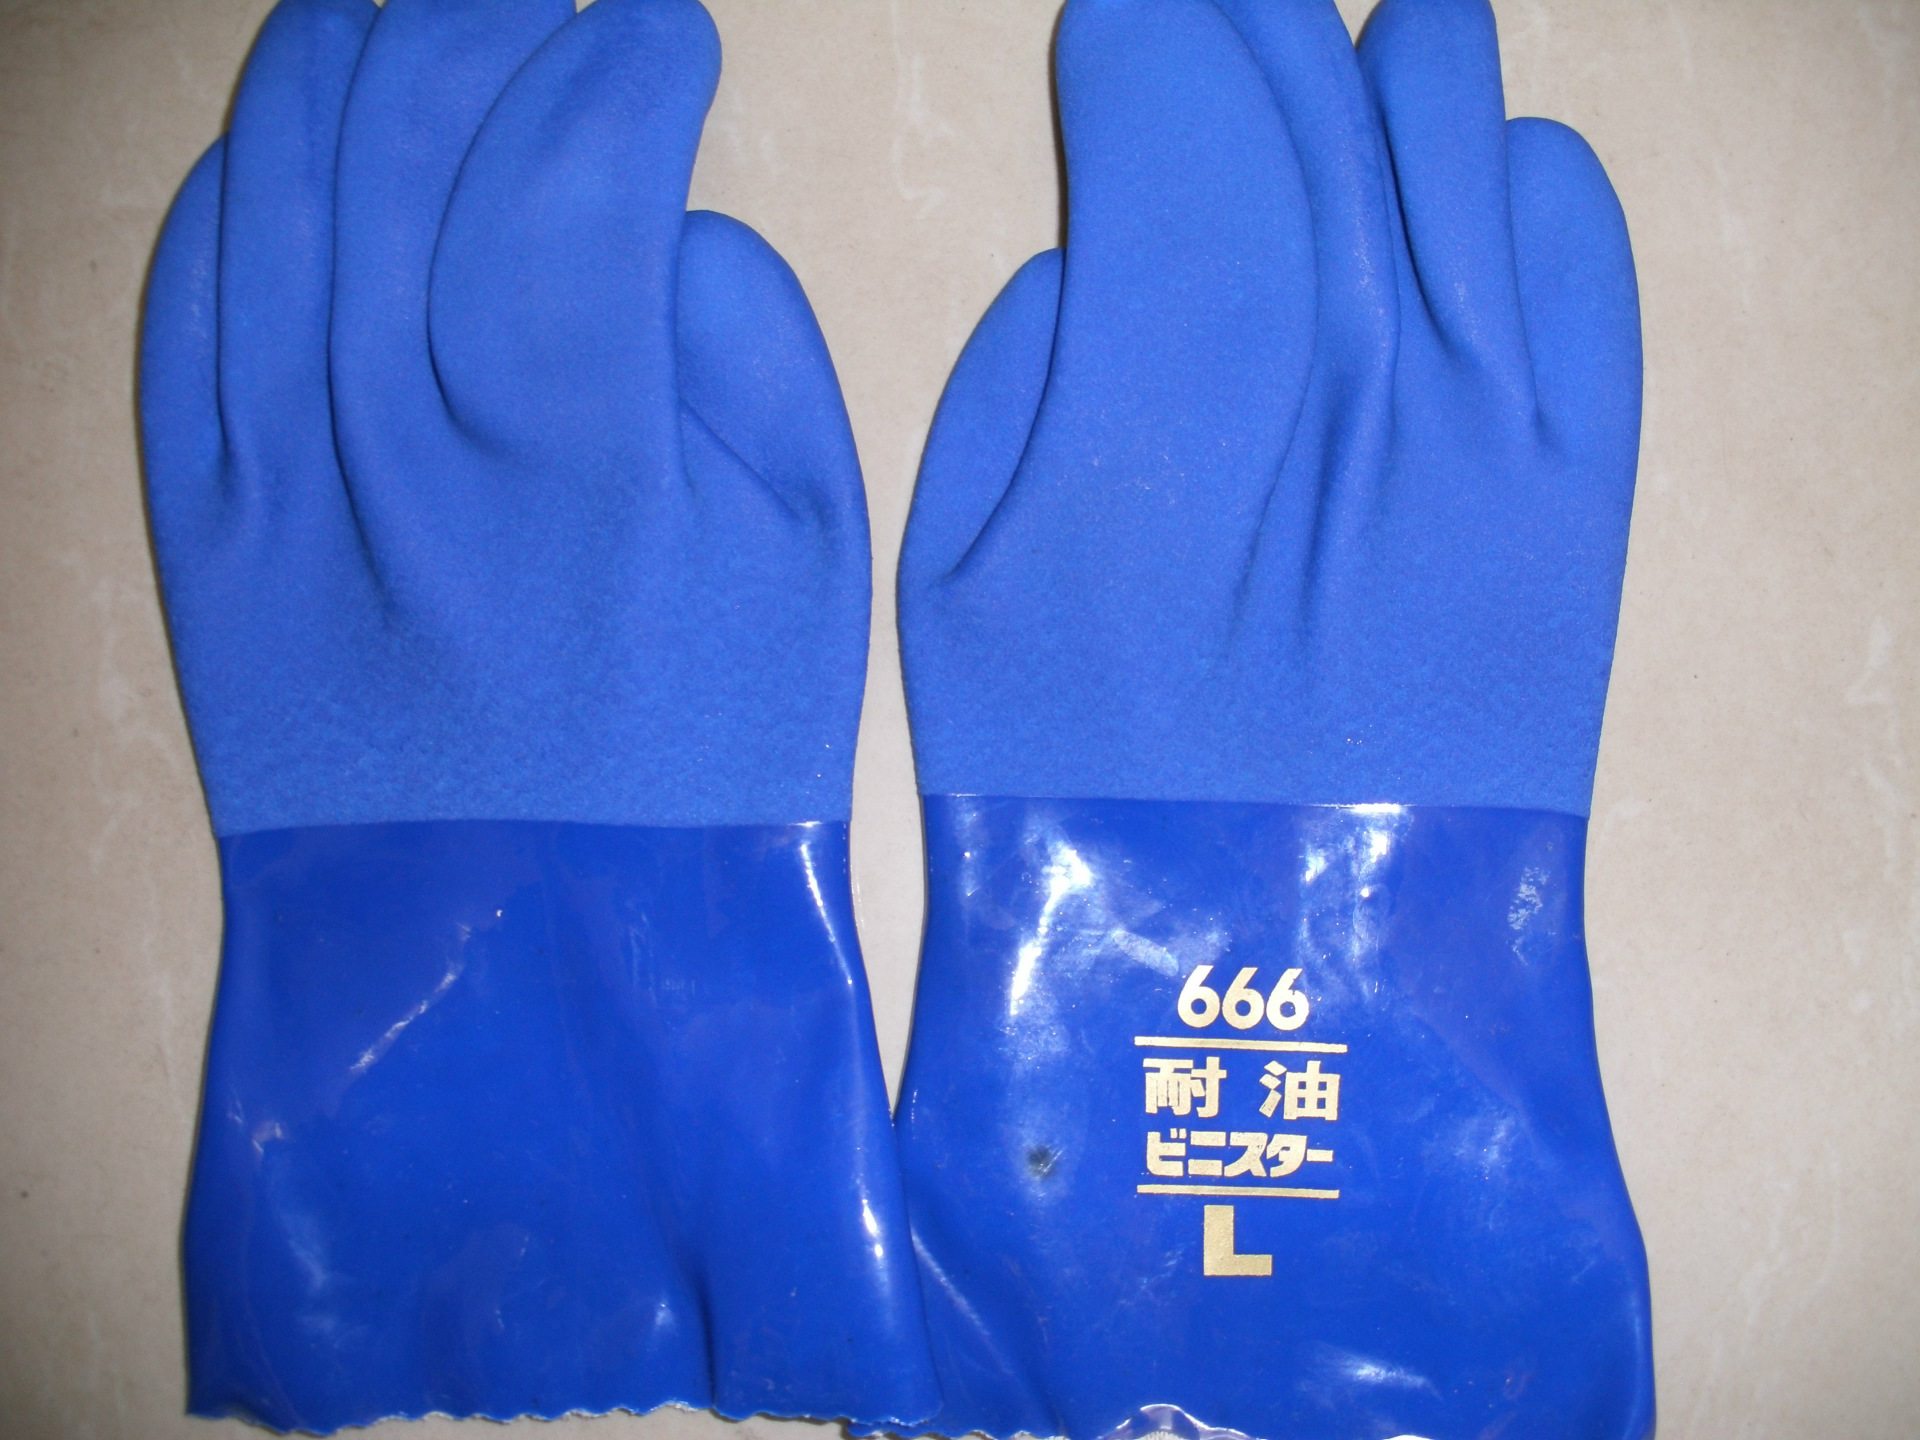 666耐油手套 pvc耐油手套 作业手套 渔业手套 工业手套 劳动手套